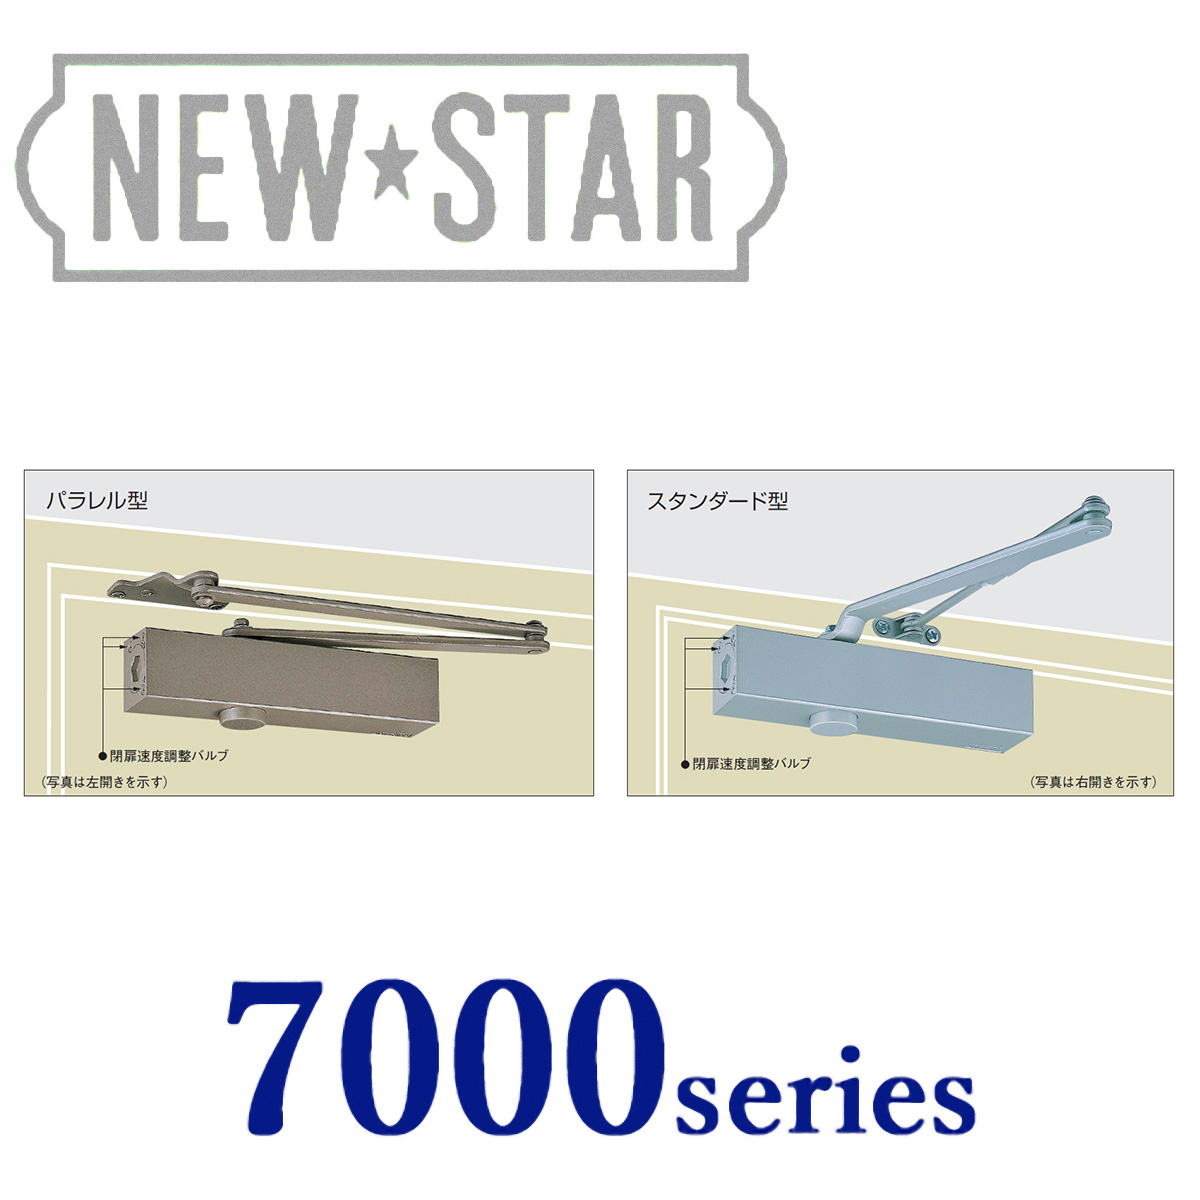 卓越 建築金物通販ビドーパル10セット入 NEW STAR ニュースター ドアクローザ 7000シリーズ パラレル型 シルバー PS-7005  ストップ付 標準ブラケット